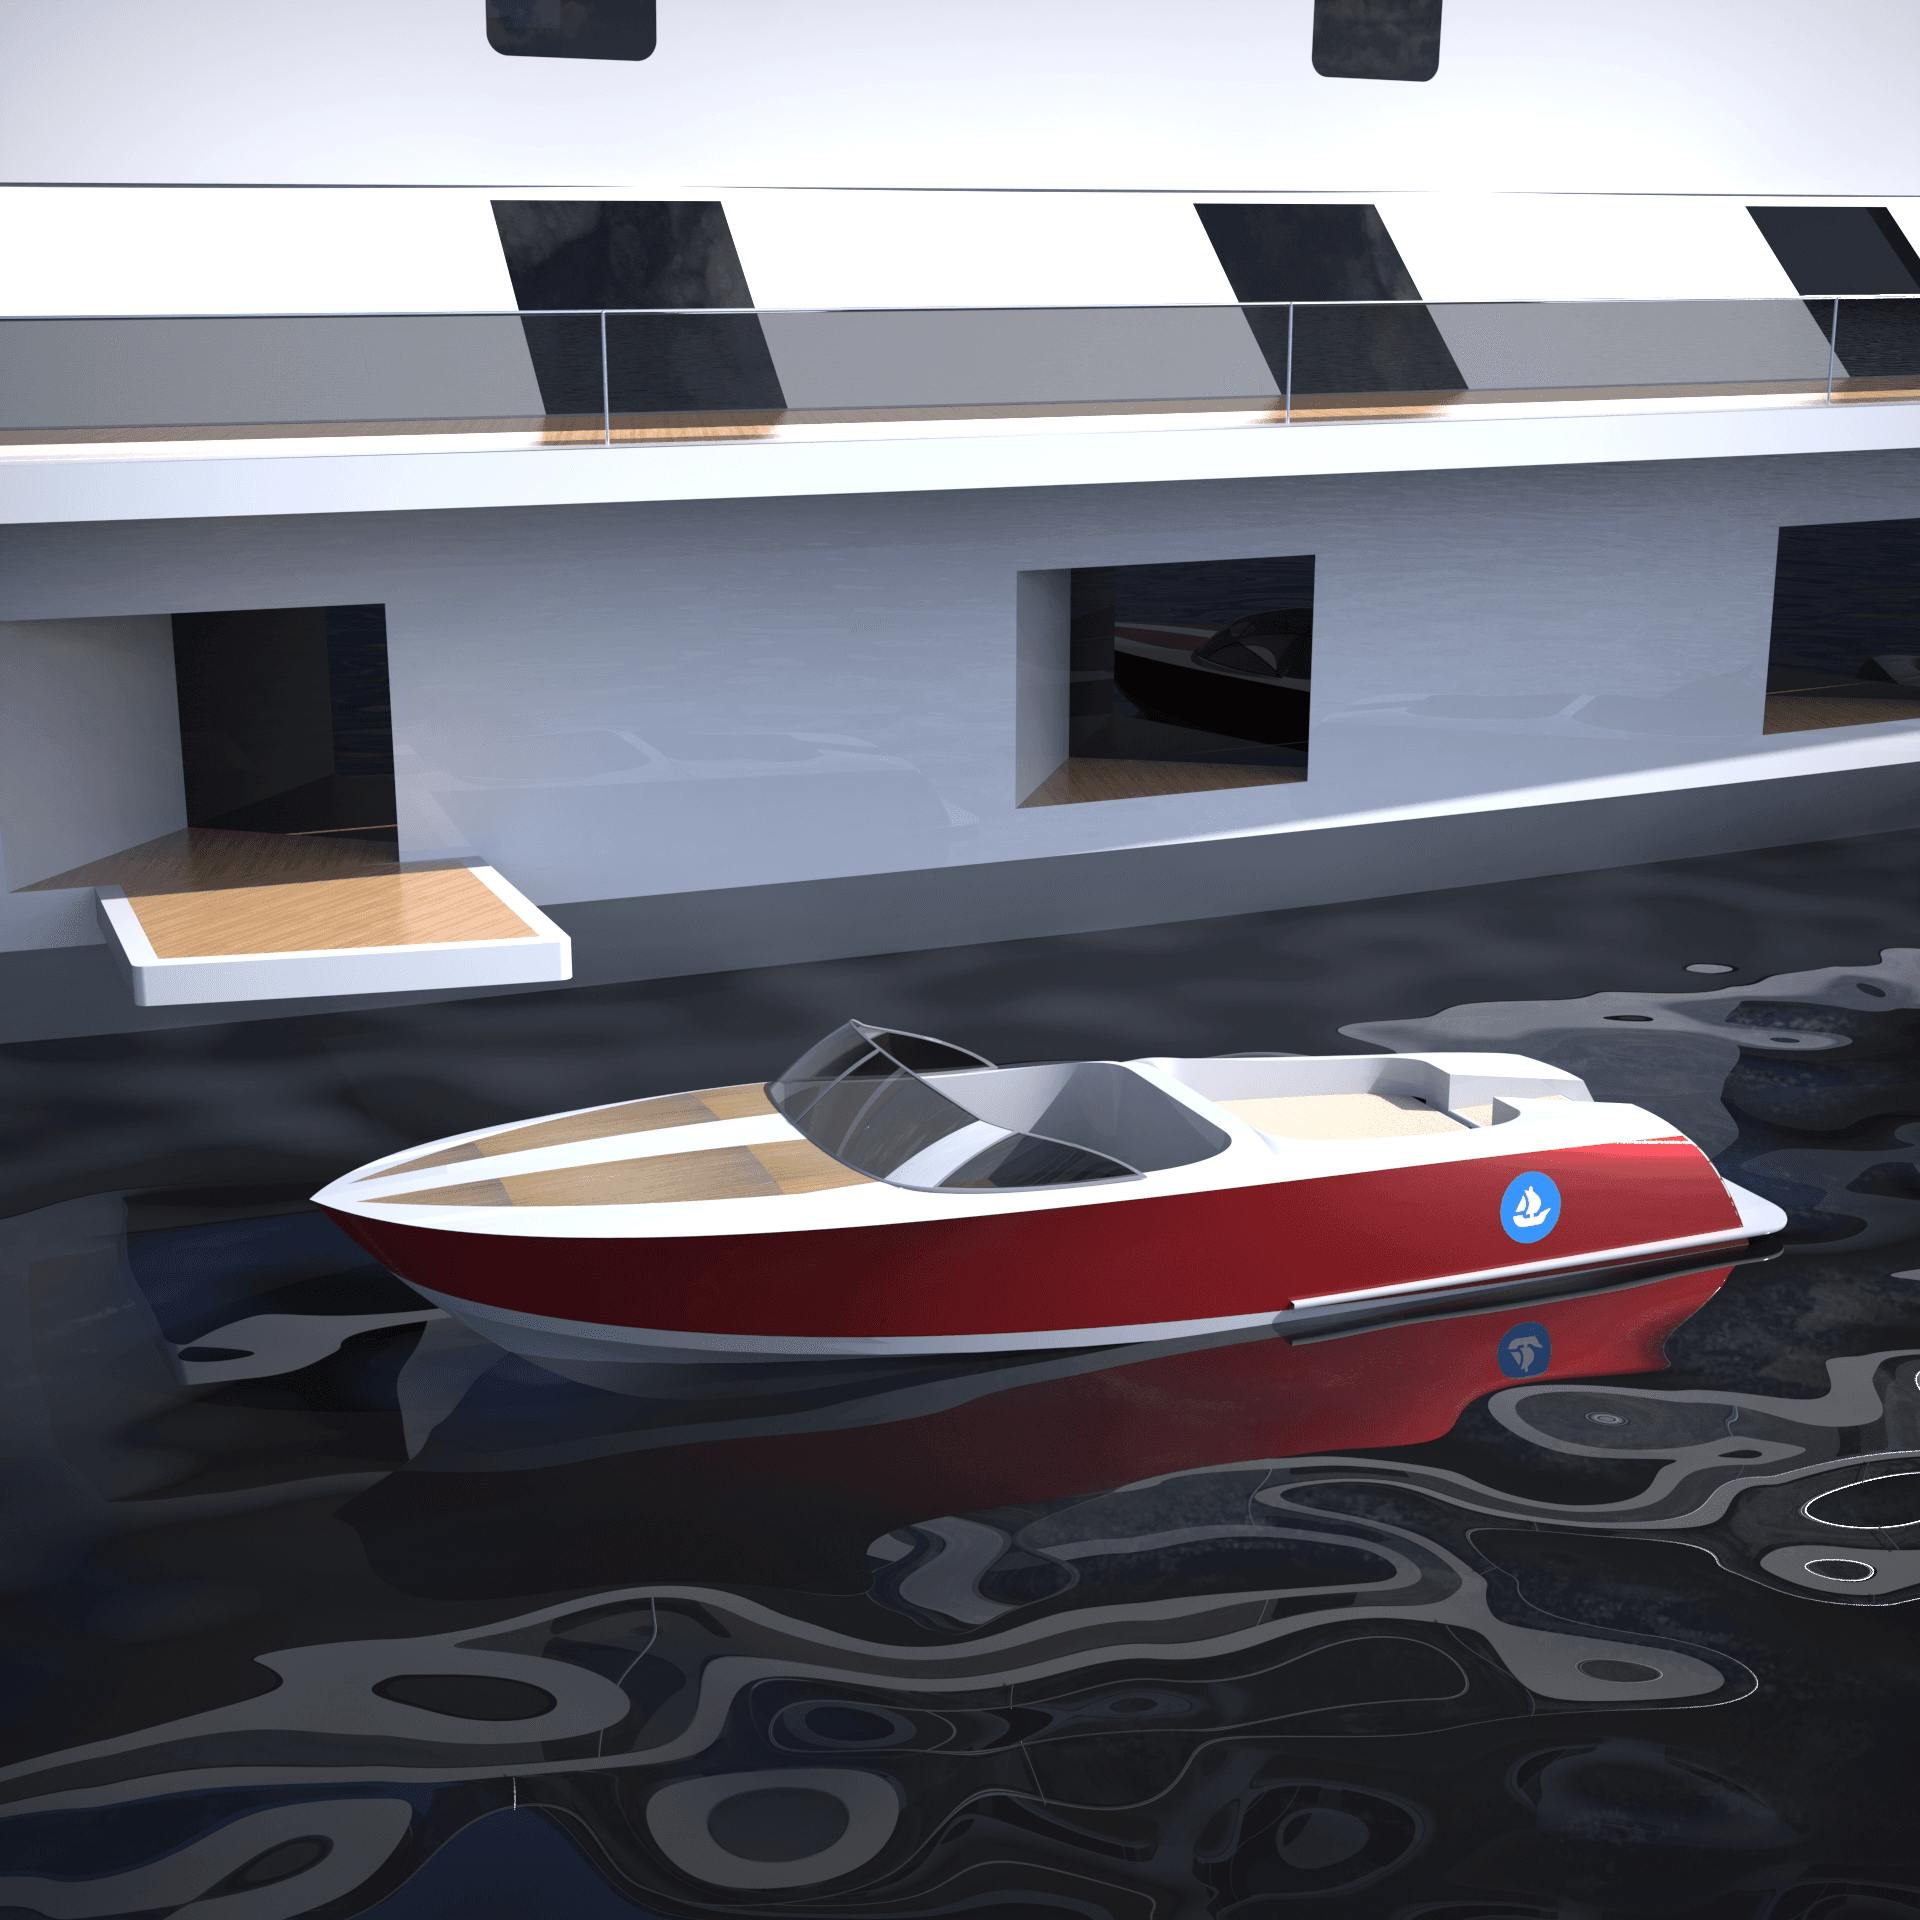 Boat #2